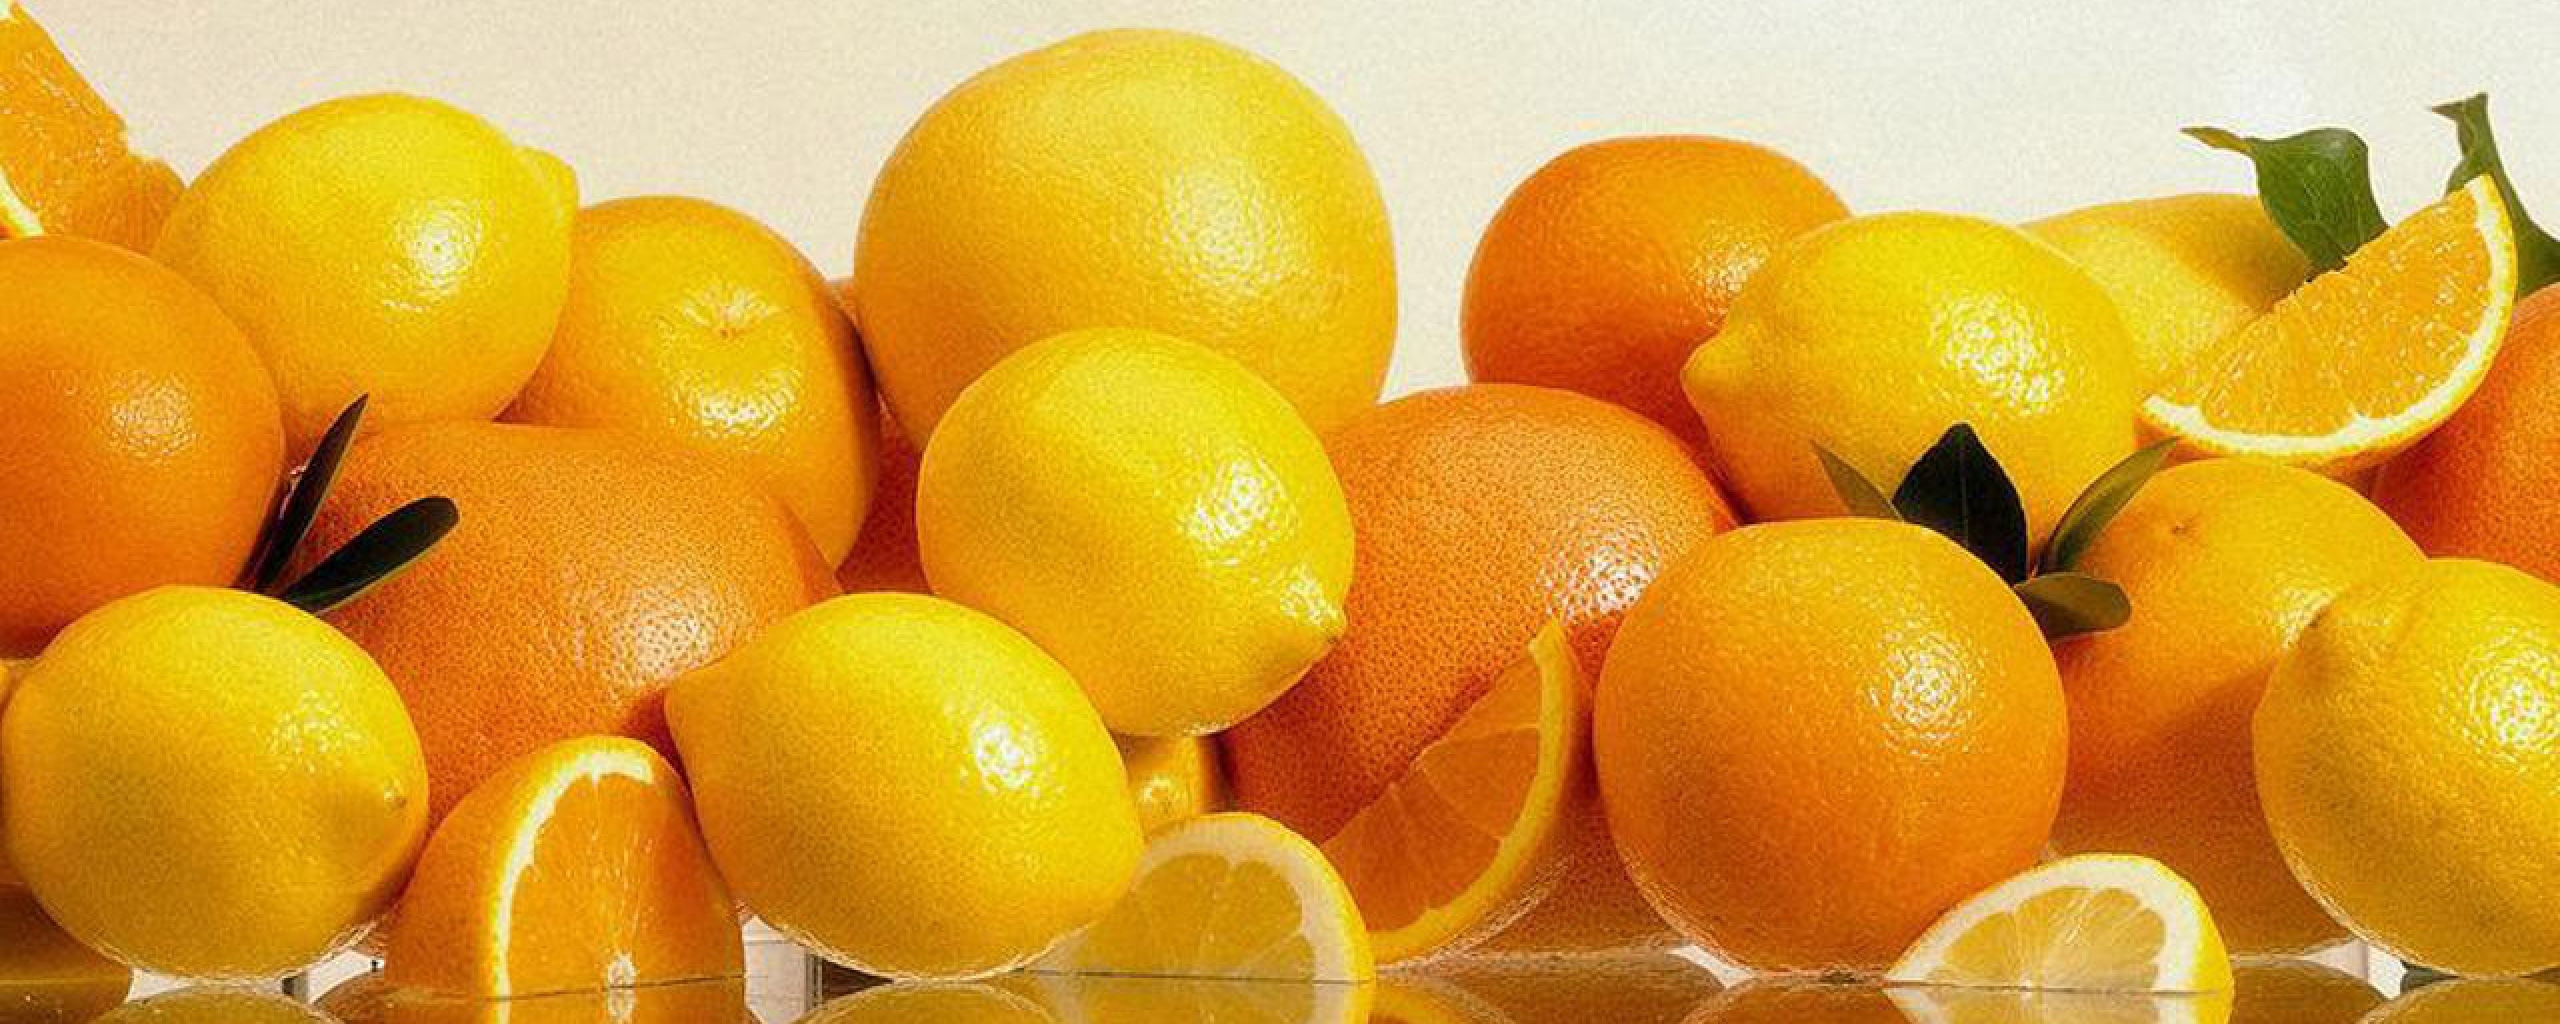 2560x1024 Wallpaper oranges, grapefruits, lemons, citron